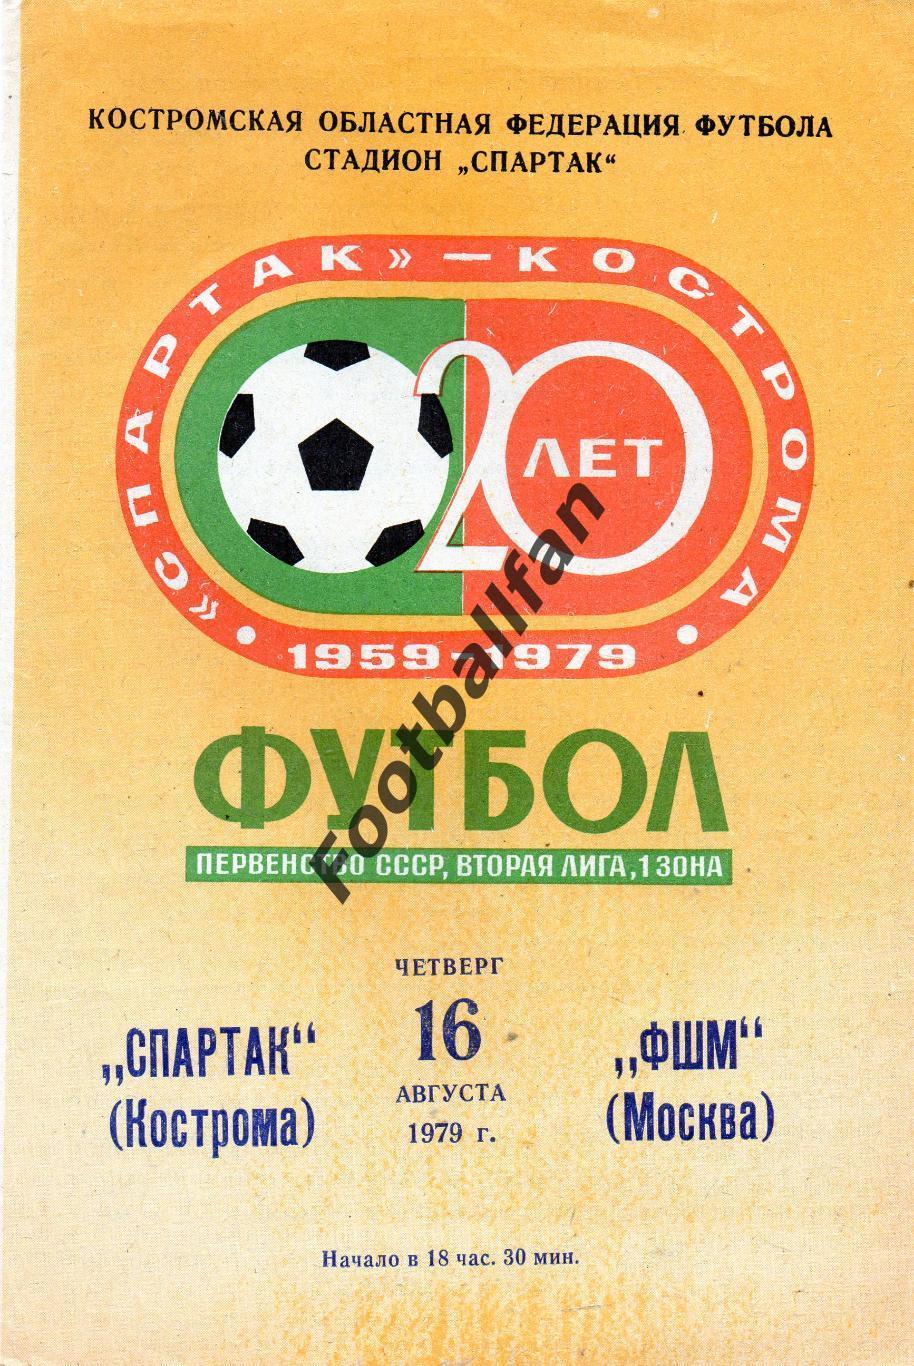 Спартак Кострома - ФШМ Москва 16.08.1979